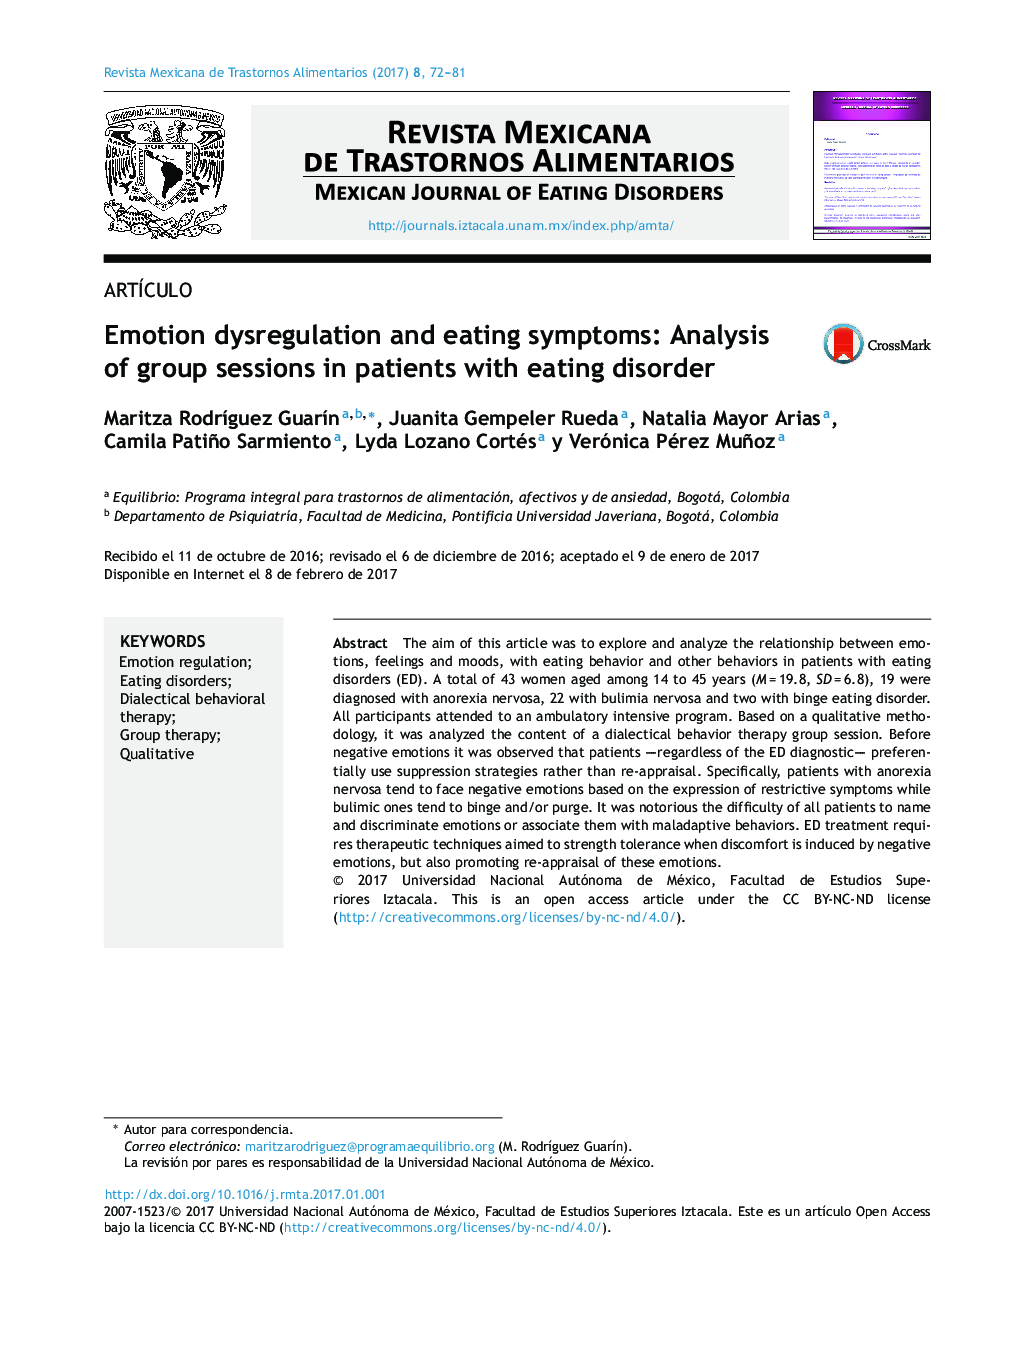 اختلالات عاطفی و نشانه های خوردن: تجزیه و تحلیل جلسات گروهی در بیماران مبتلا به اختلال خوردن 